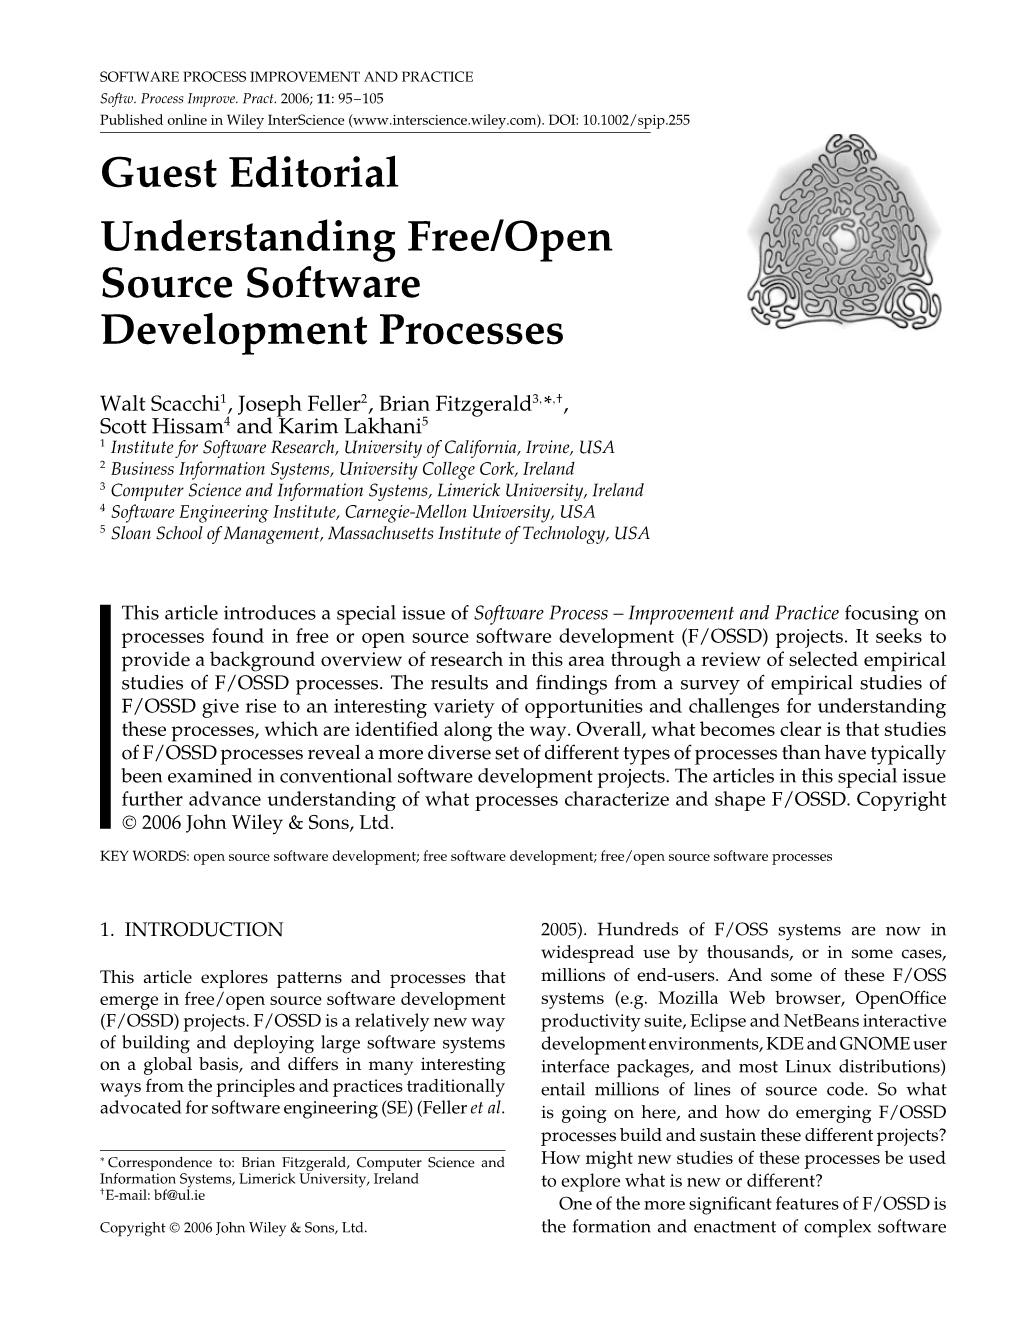 Understanding Free/Open Source Software Development Processes